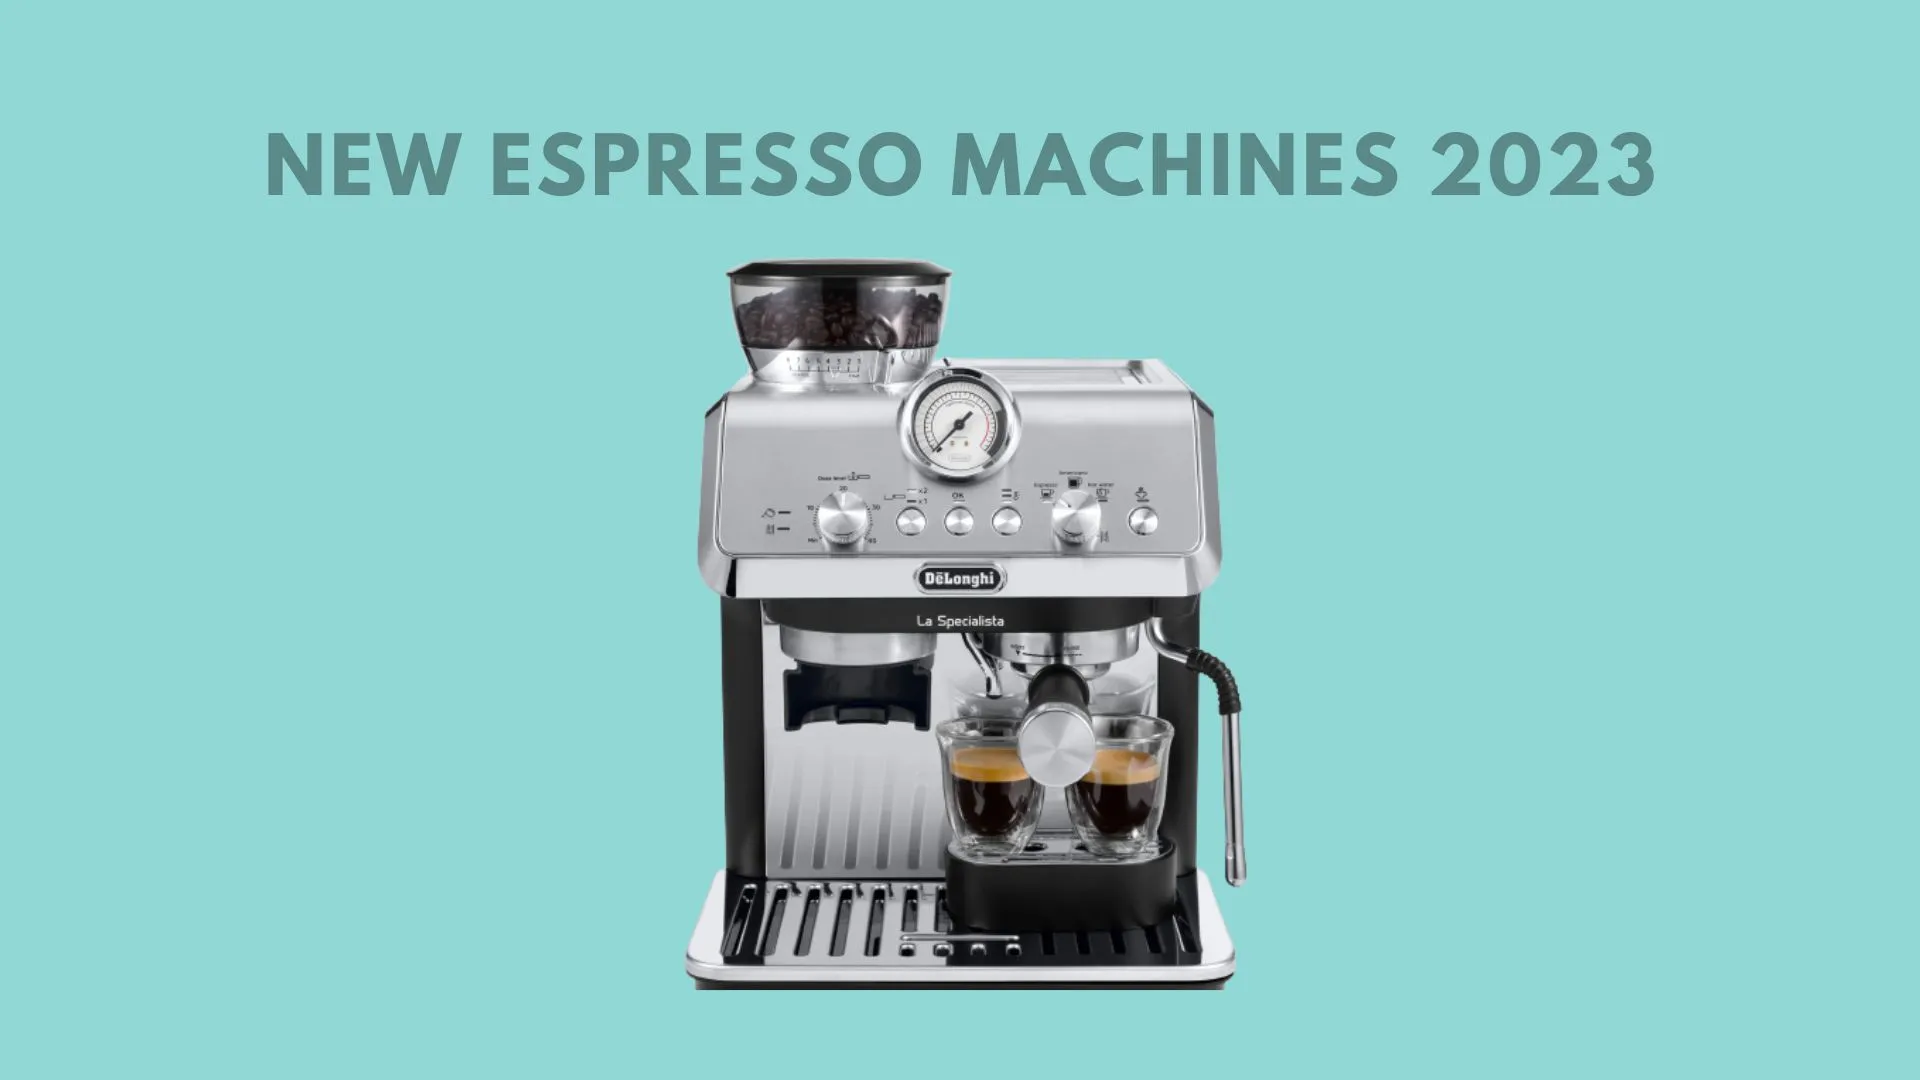 New espresso machines 2023 – De'Longhi La Specialista, Breville The Barista Express Impress, Diletta Mio, Gaggia Classic Pro and Jura E6